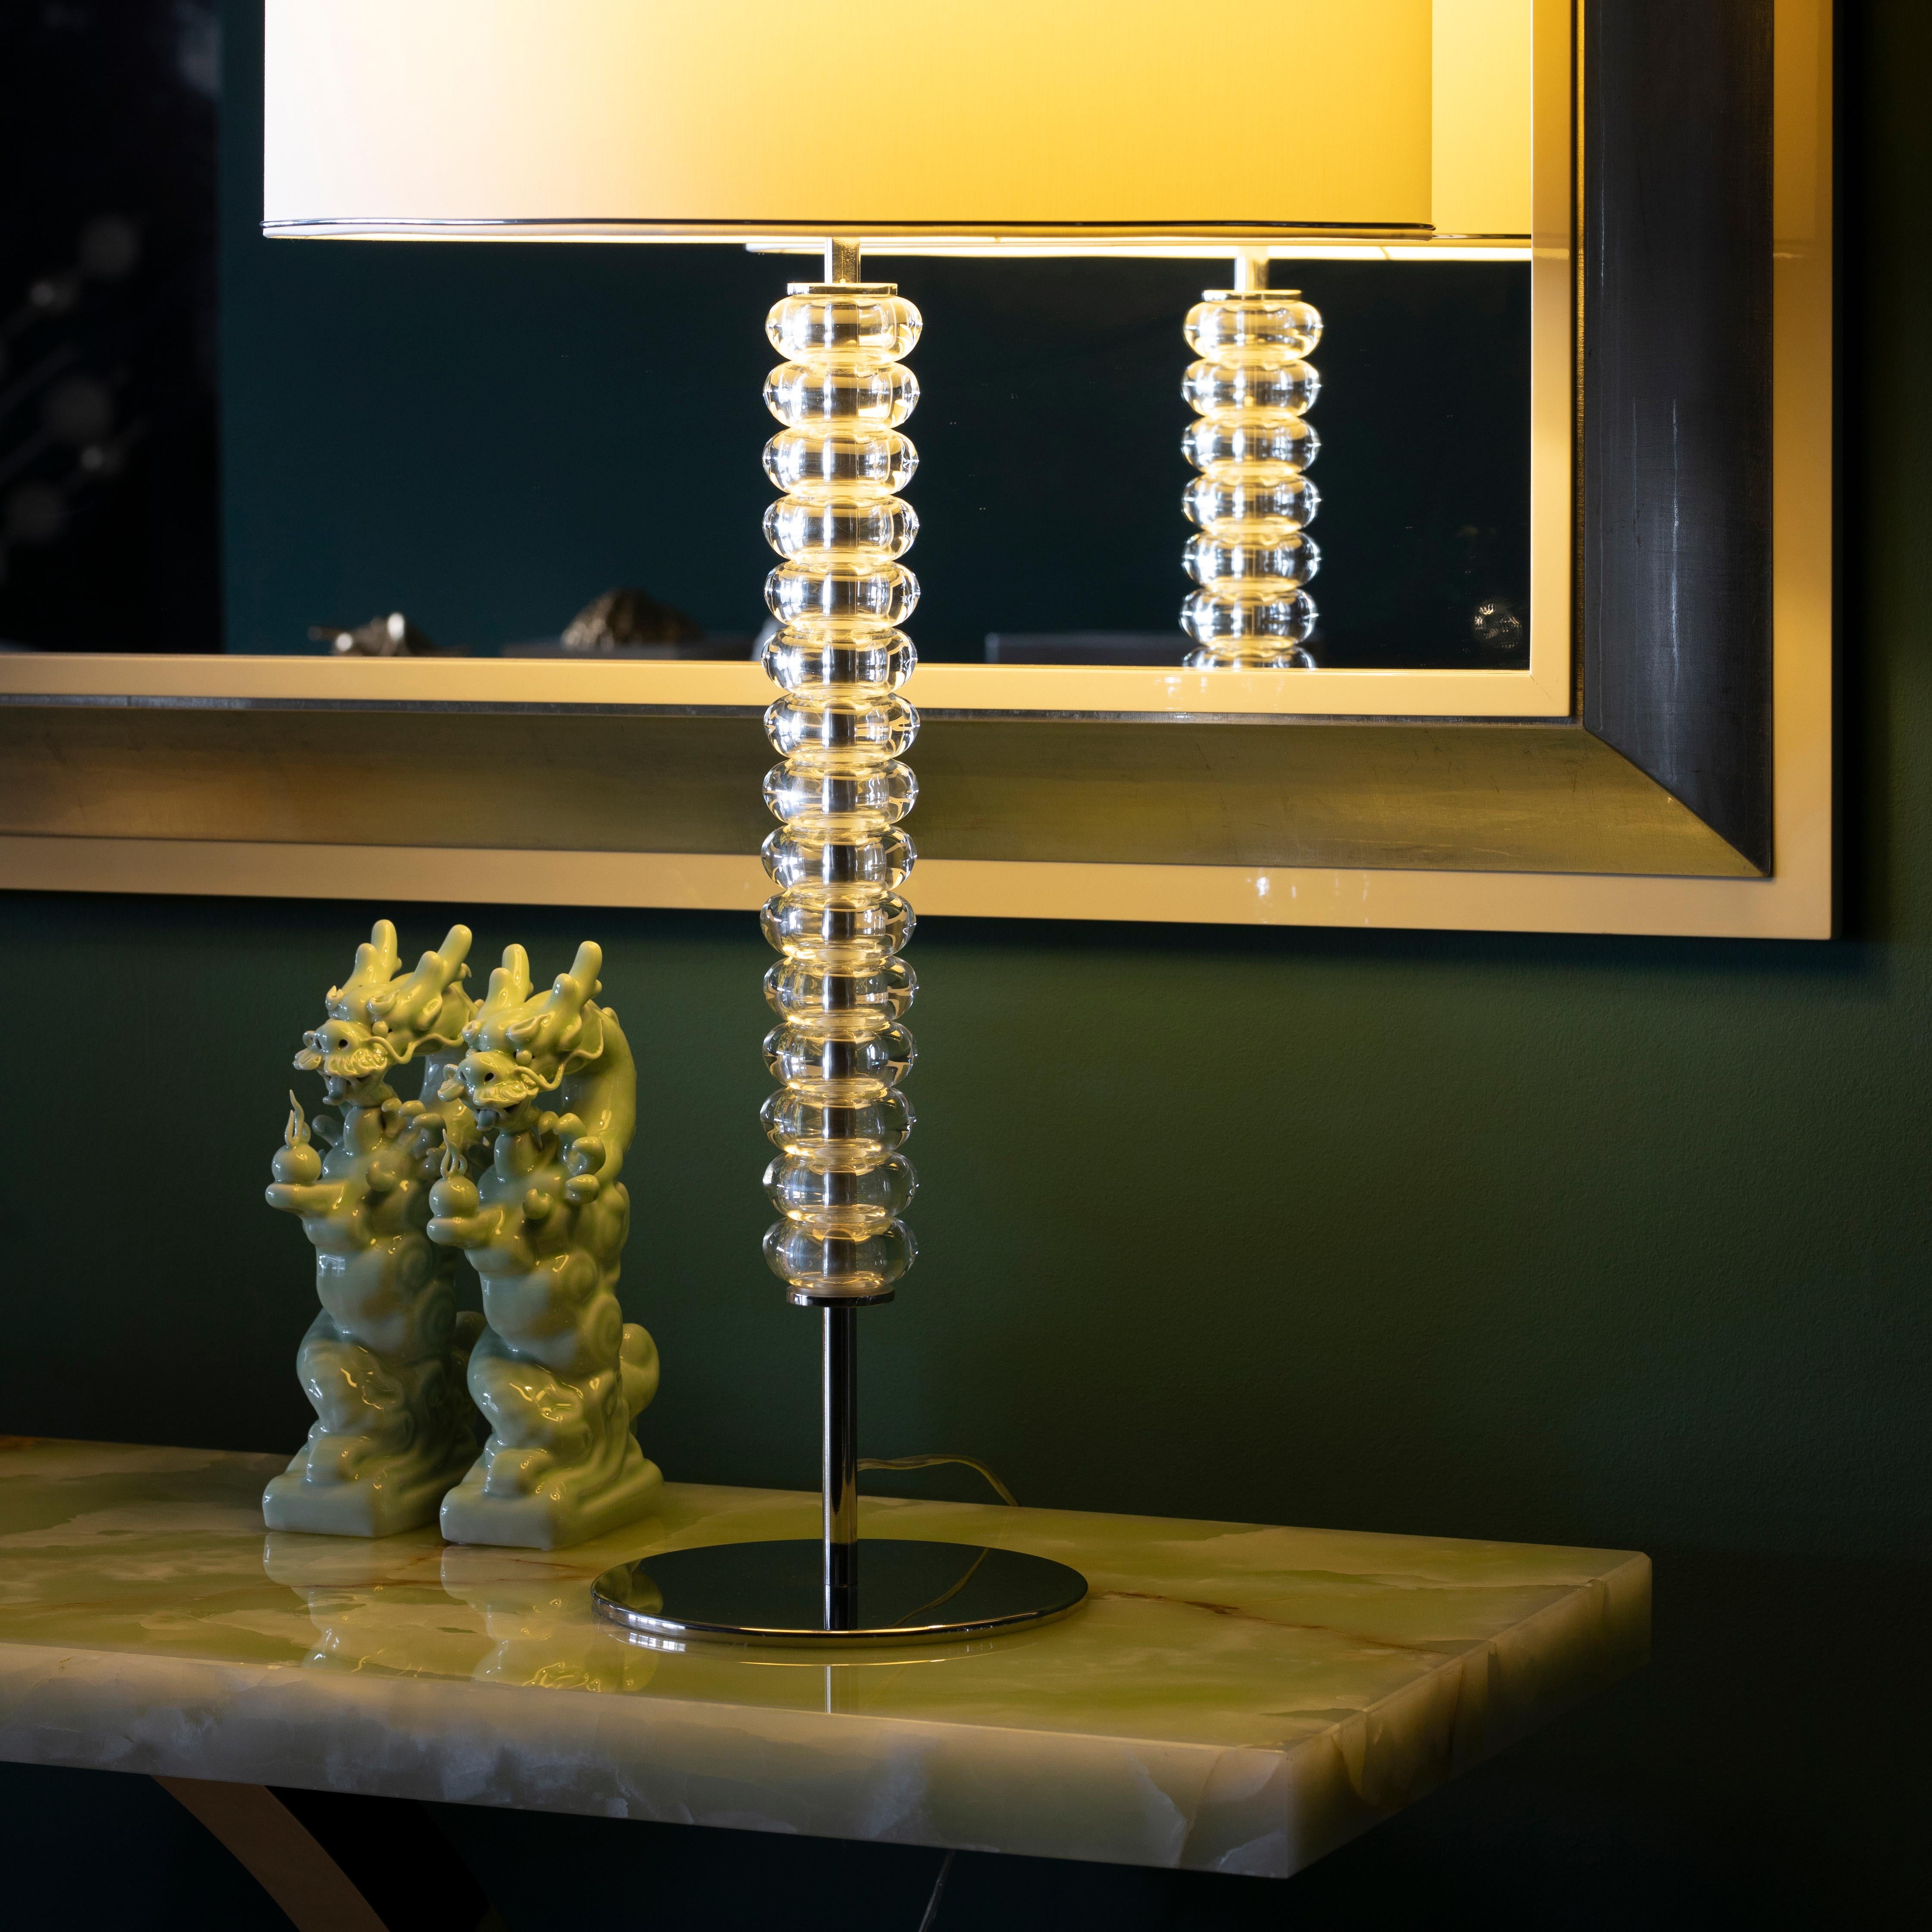 2er Set Saldanha Tischlampen, Modern Collection, Handgefertigt in Portugal - Europa von GF Modern.

Die luxuriöse Tischleuchte Saldanha schafft ein unterschwelliges Ambiente für außergewöhnliches Wohnen. Die klaren Glaskugeln harmonieren mit dem